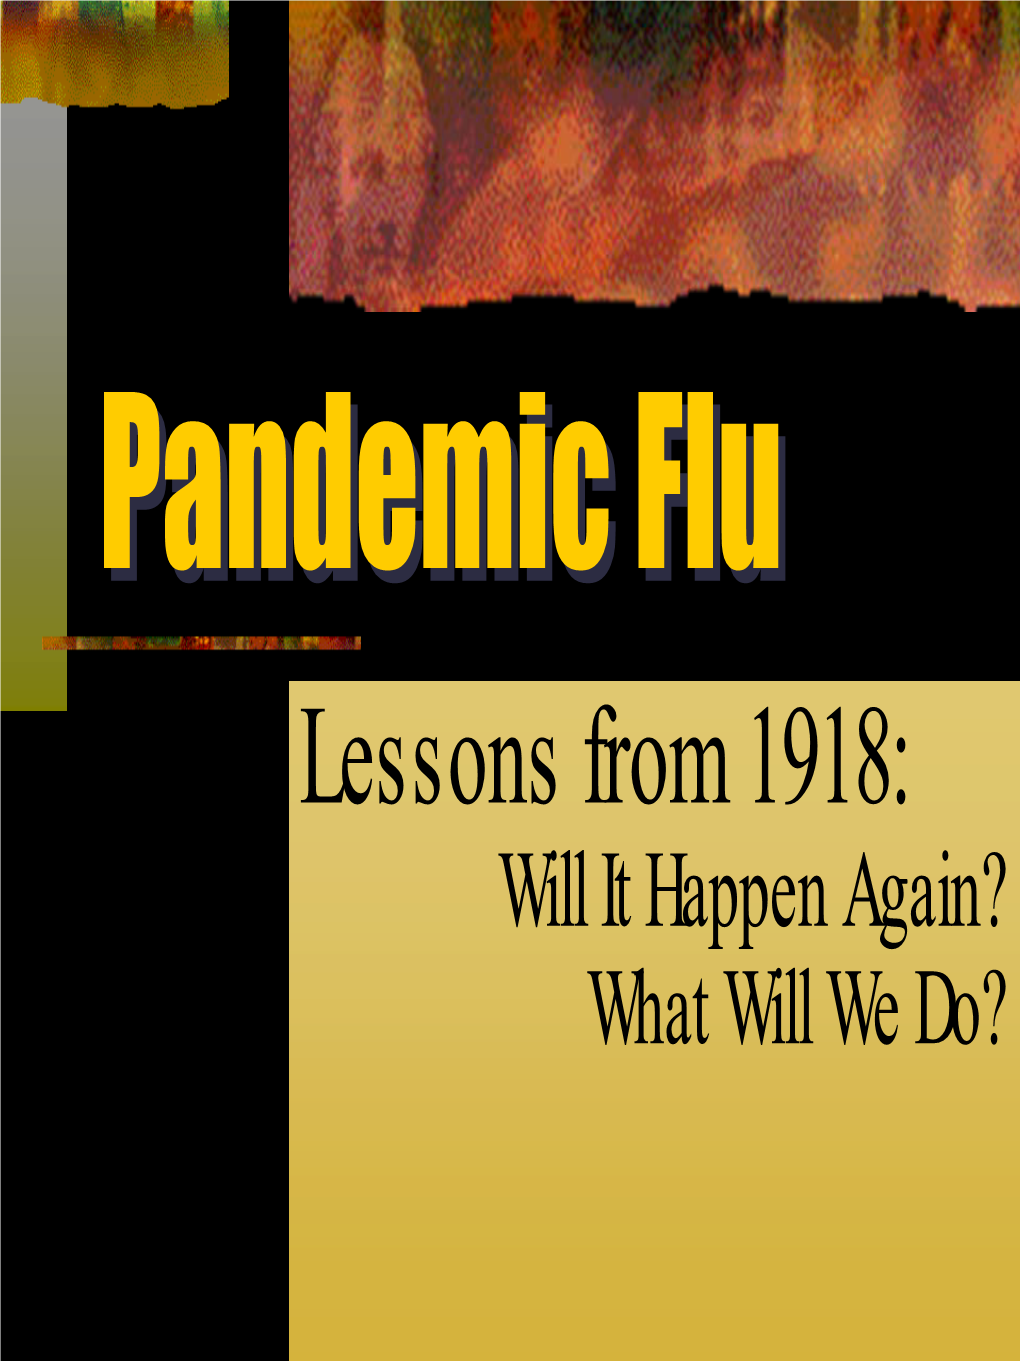 1918 Pandemic